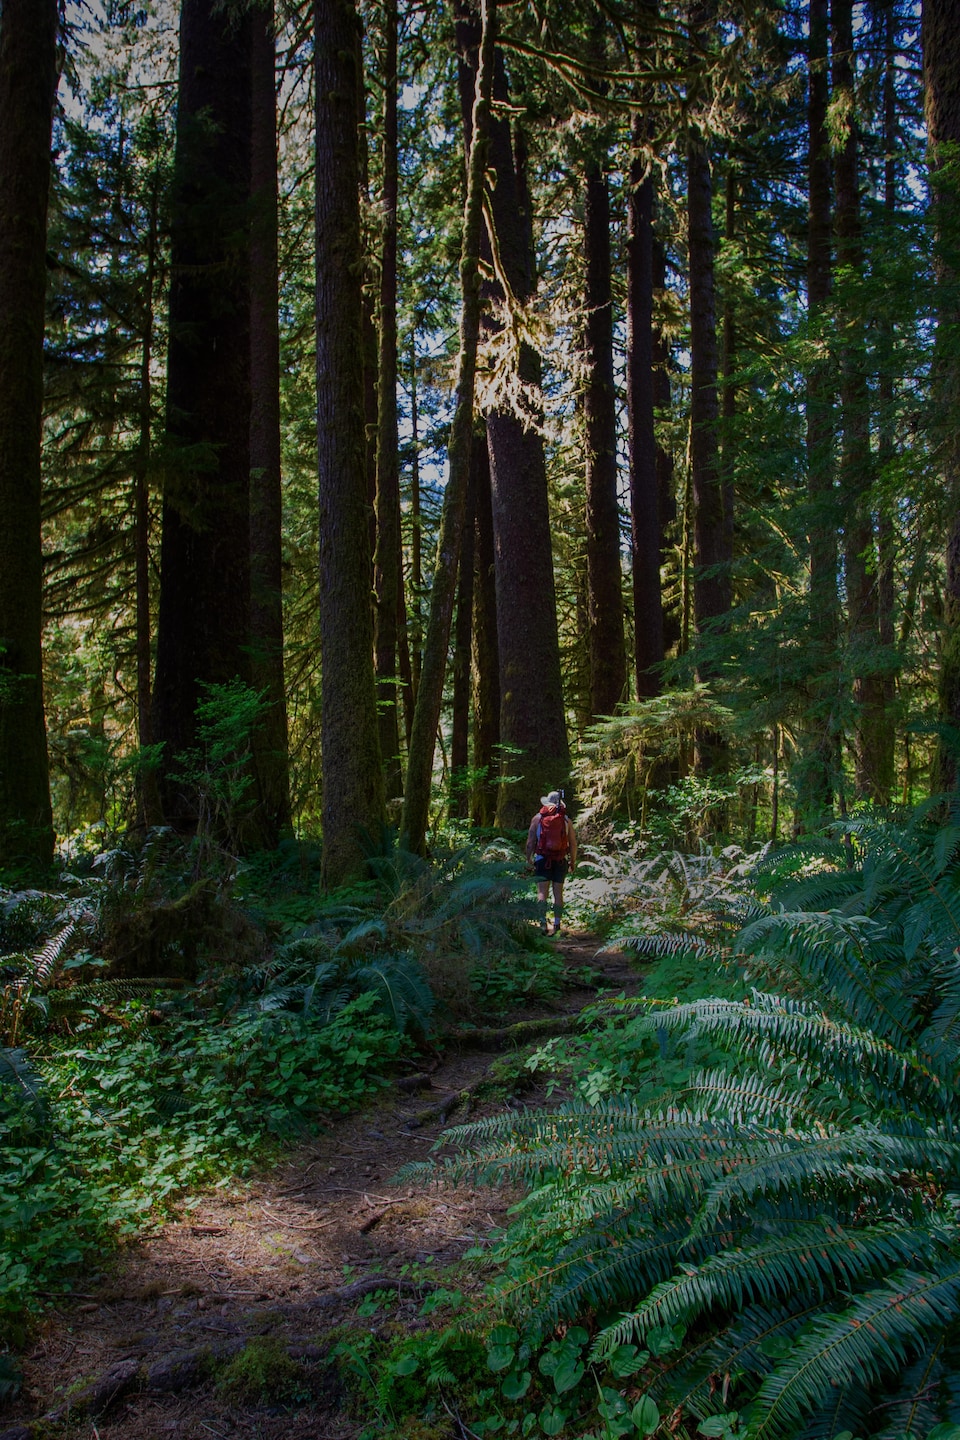 Image d'entête du récit, montrant un homme qui marche dans une forêt d'arbres géants.